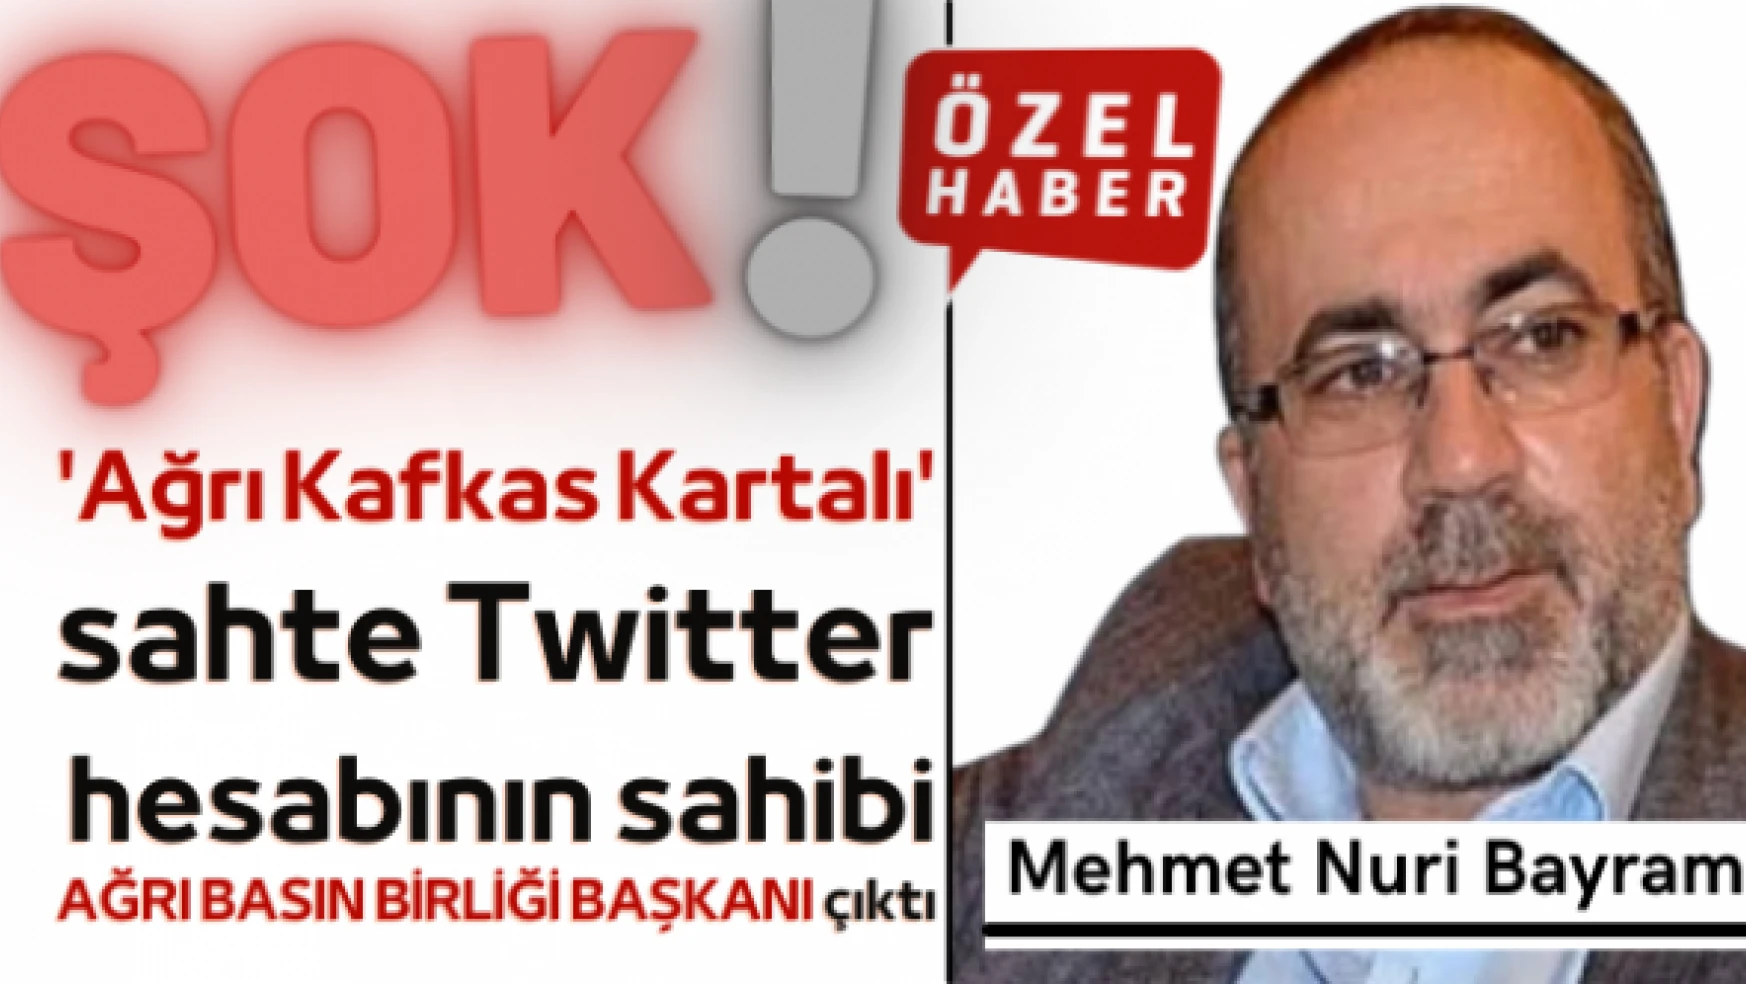 'Ağrı Kafkas Kartalı' sahte Twitter hesabının sahibi Ağrı Basın Birliği Başkanı çıktı